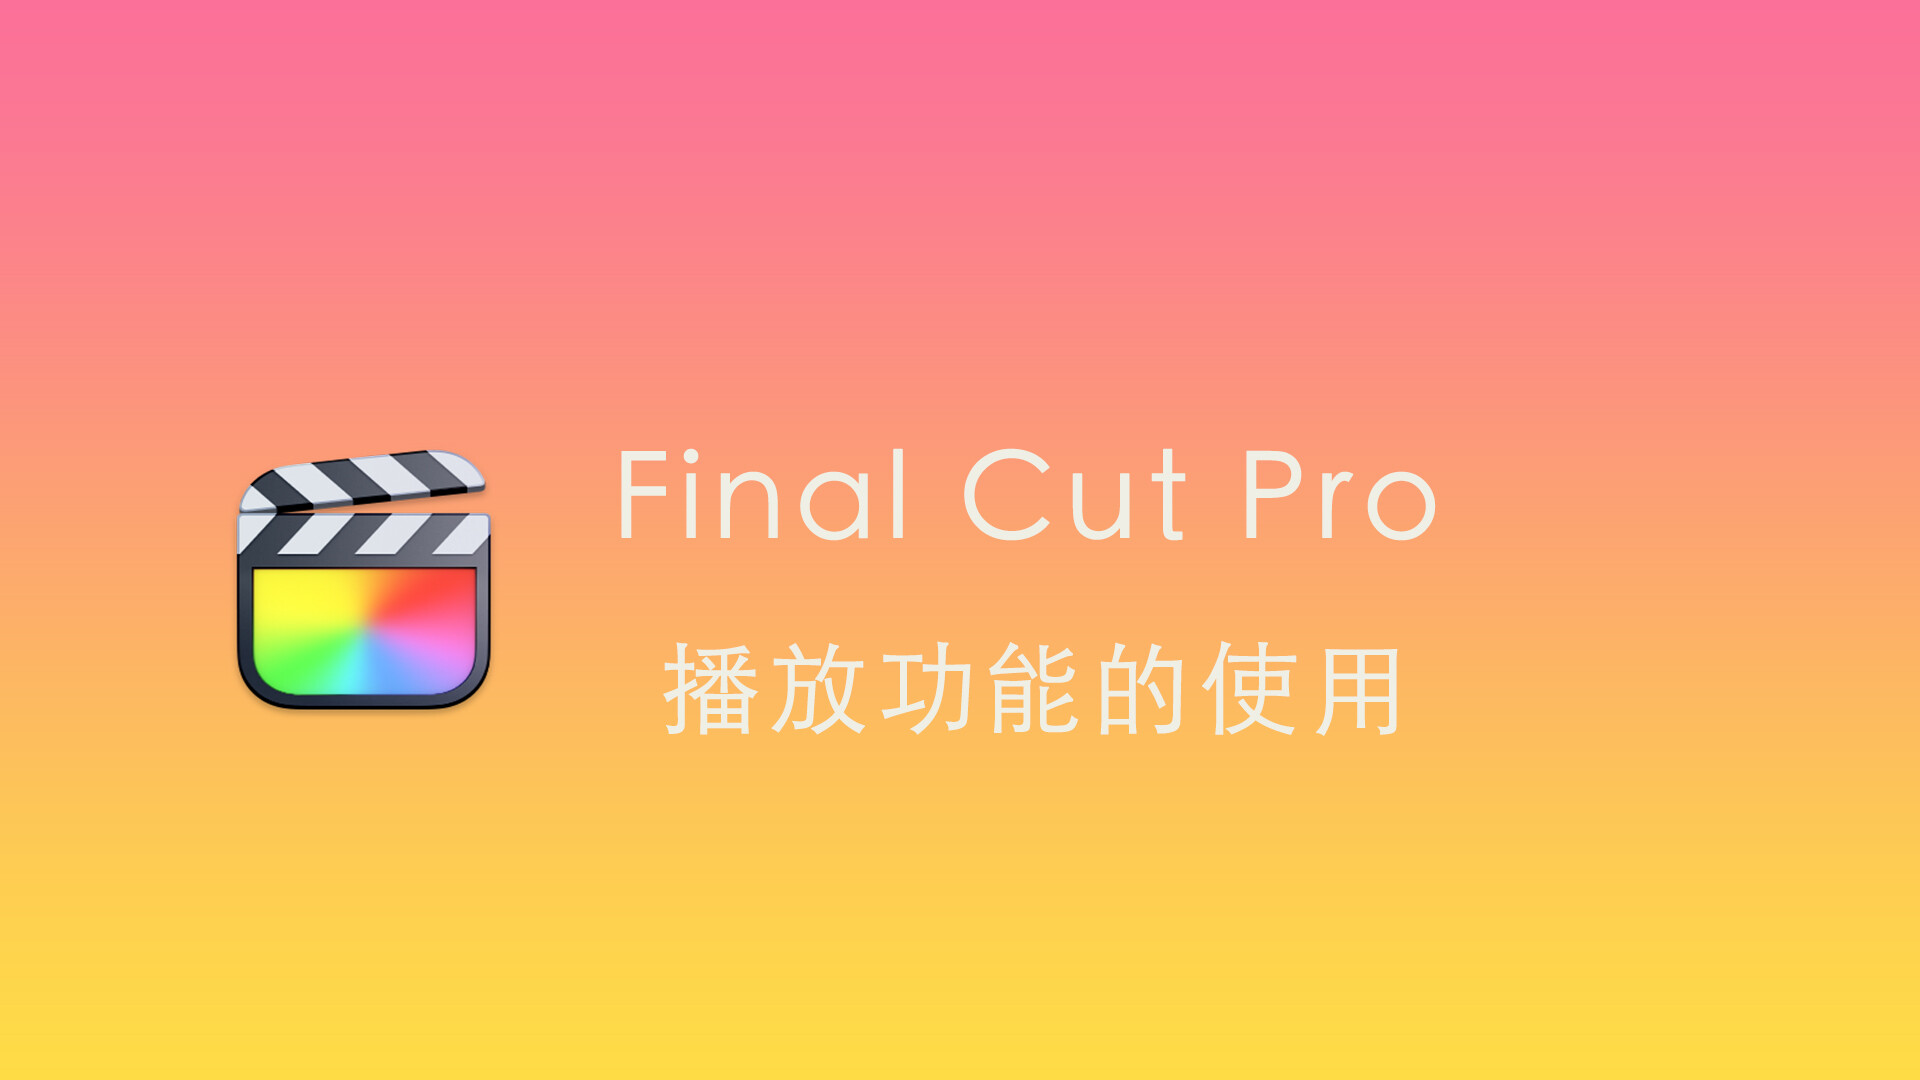 Final Cut Pro中文教程(37)：fcpx播放功能的使用